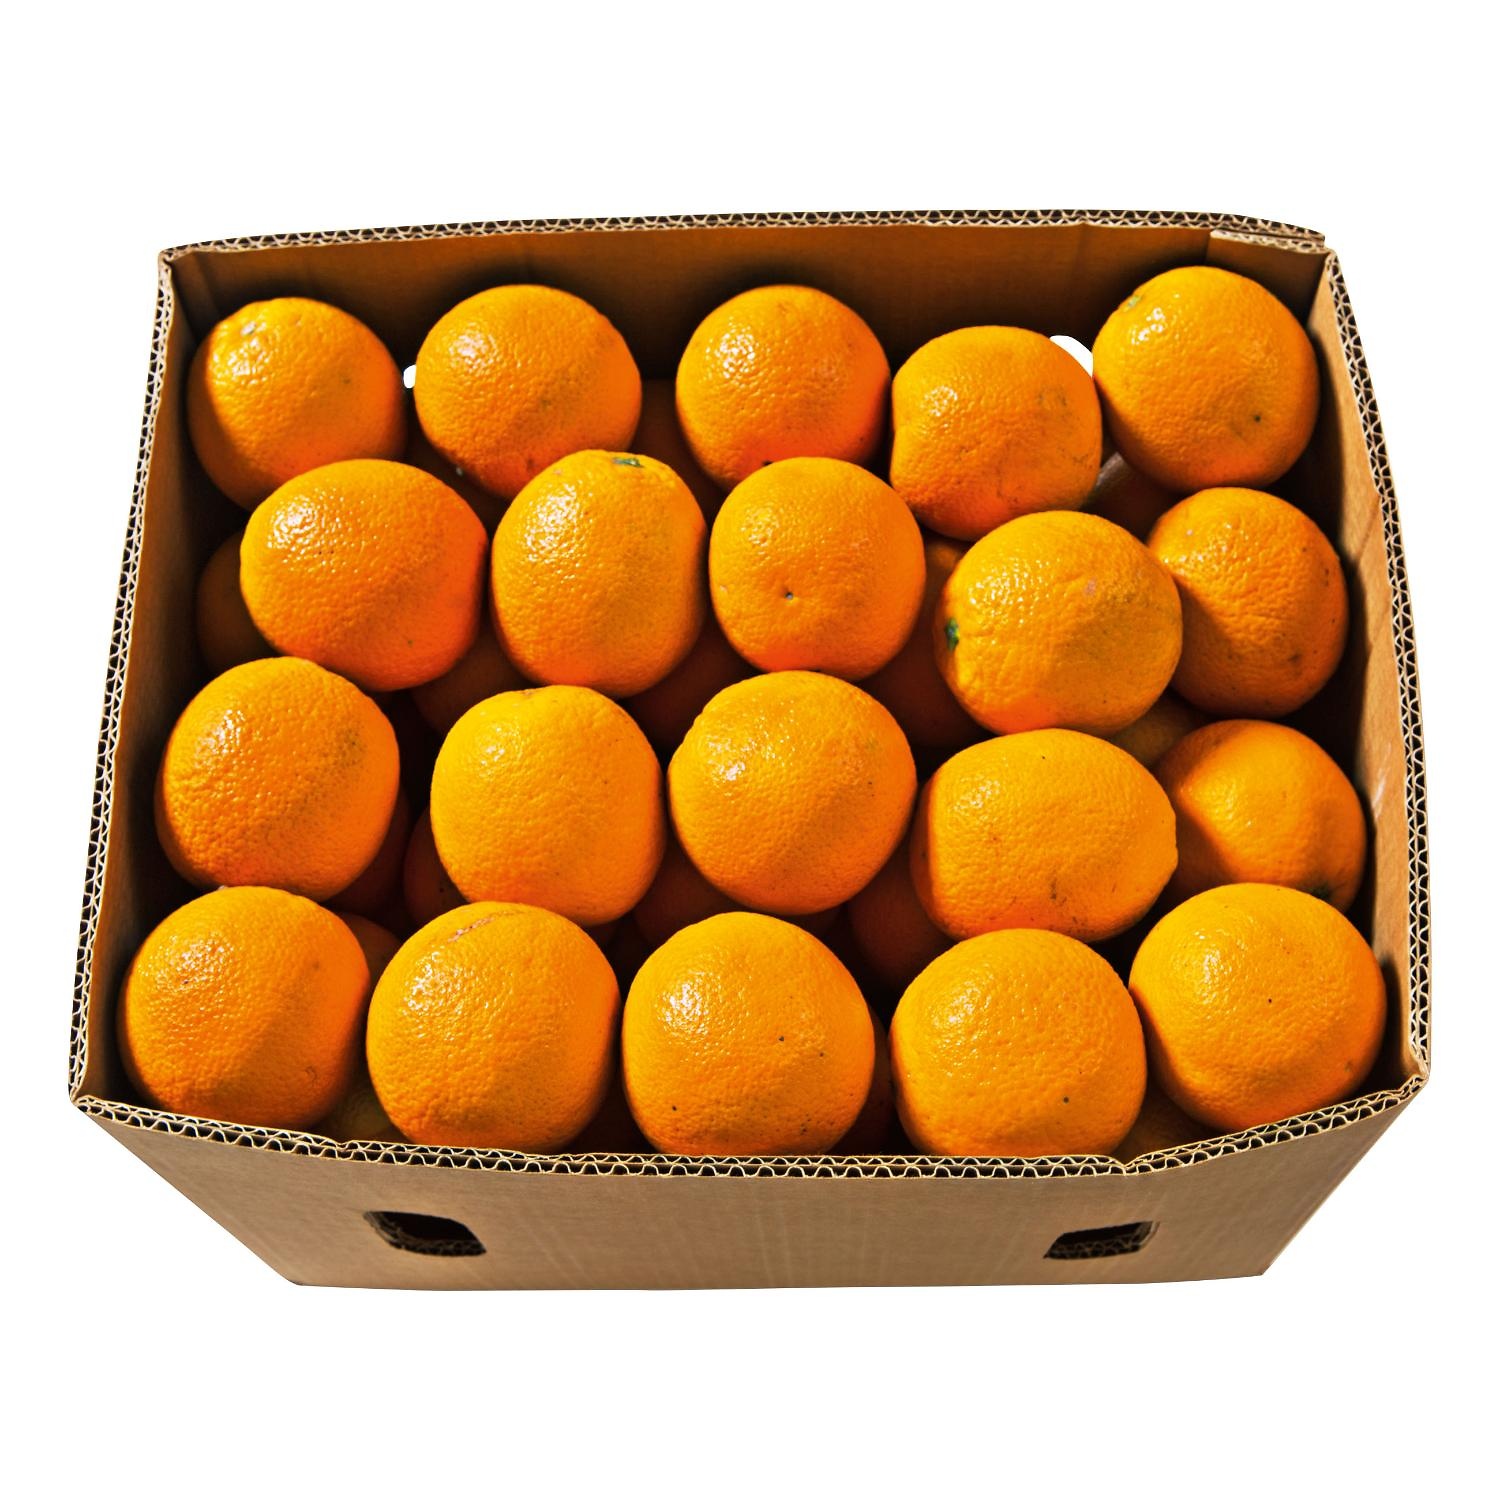 Sinaasappels Pers doos a ca 14KG